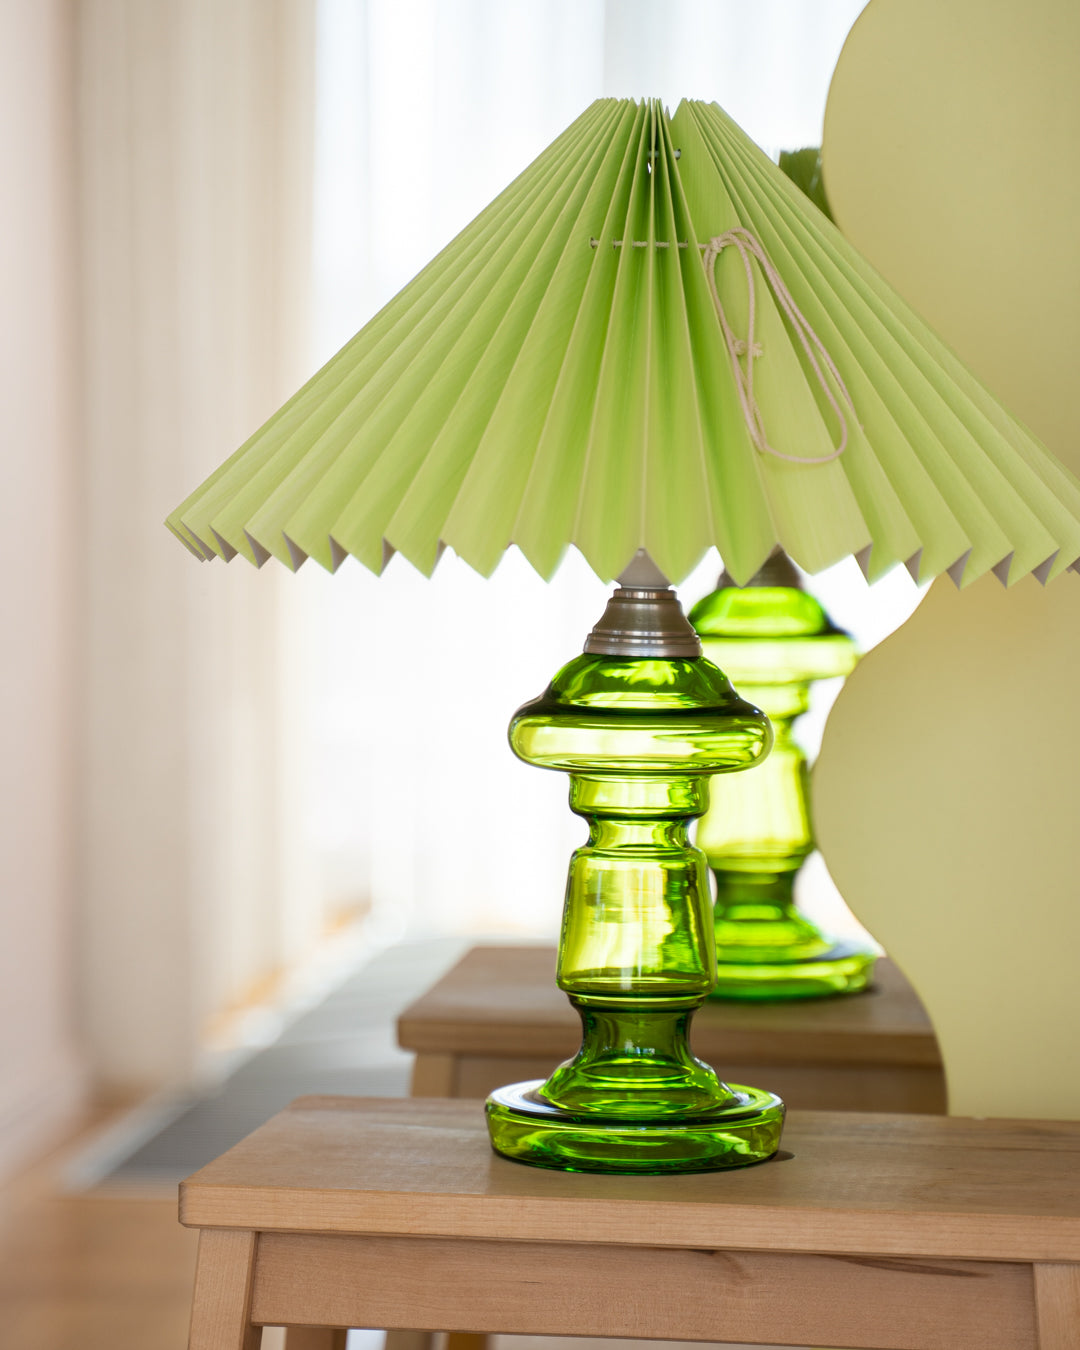 Æblegrøn Lampeskærm med klar grøn lampe